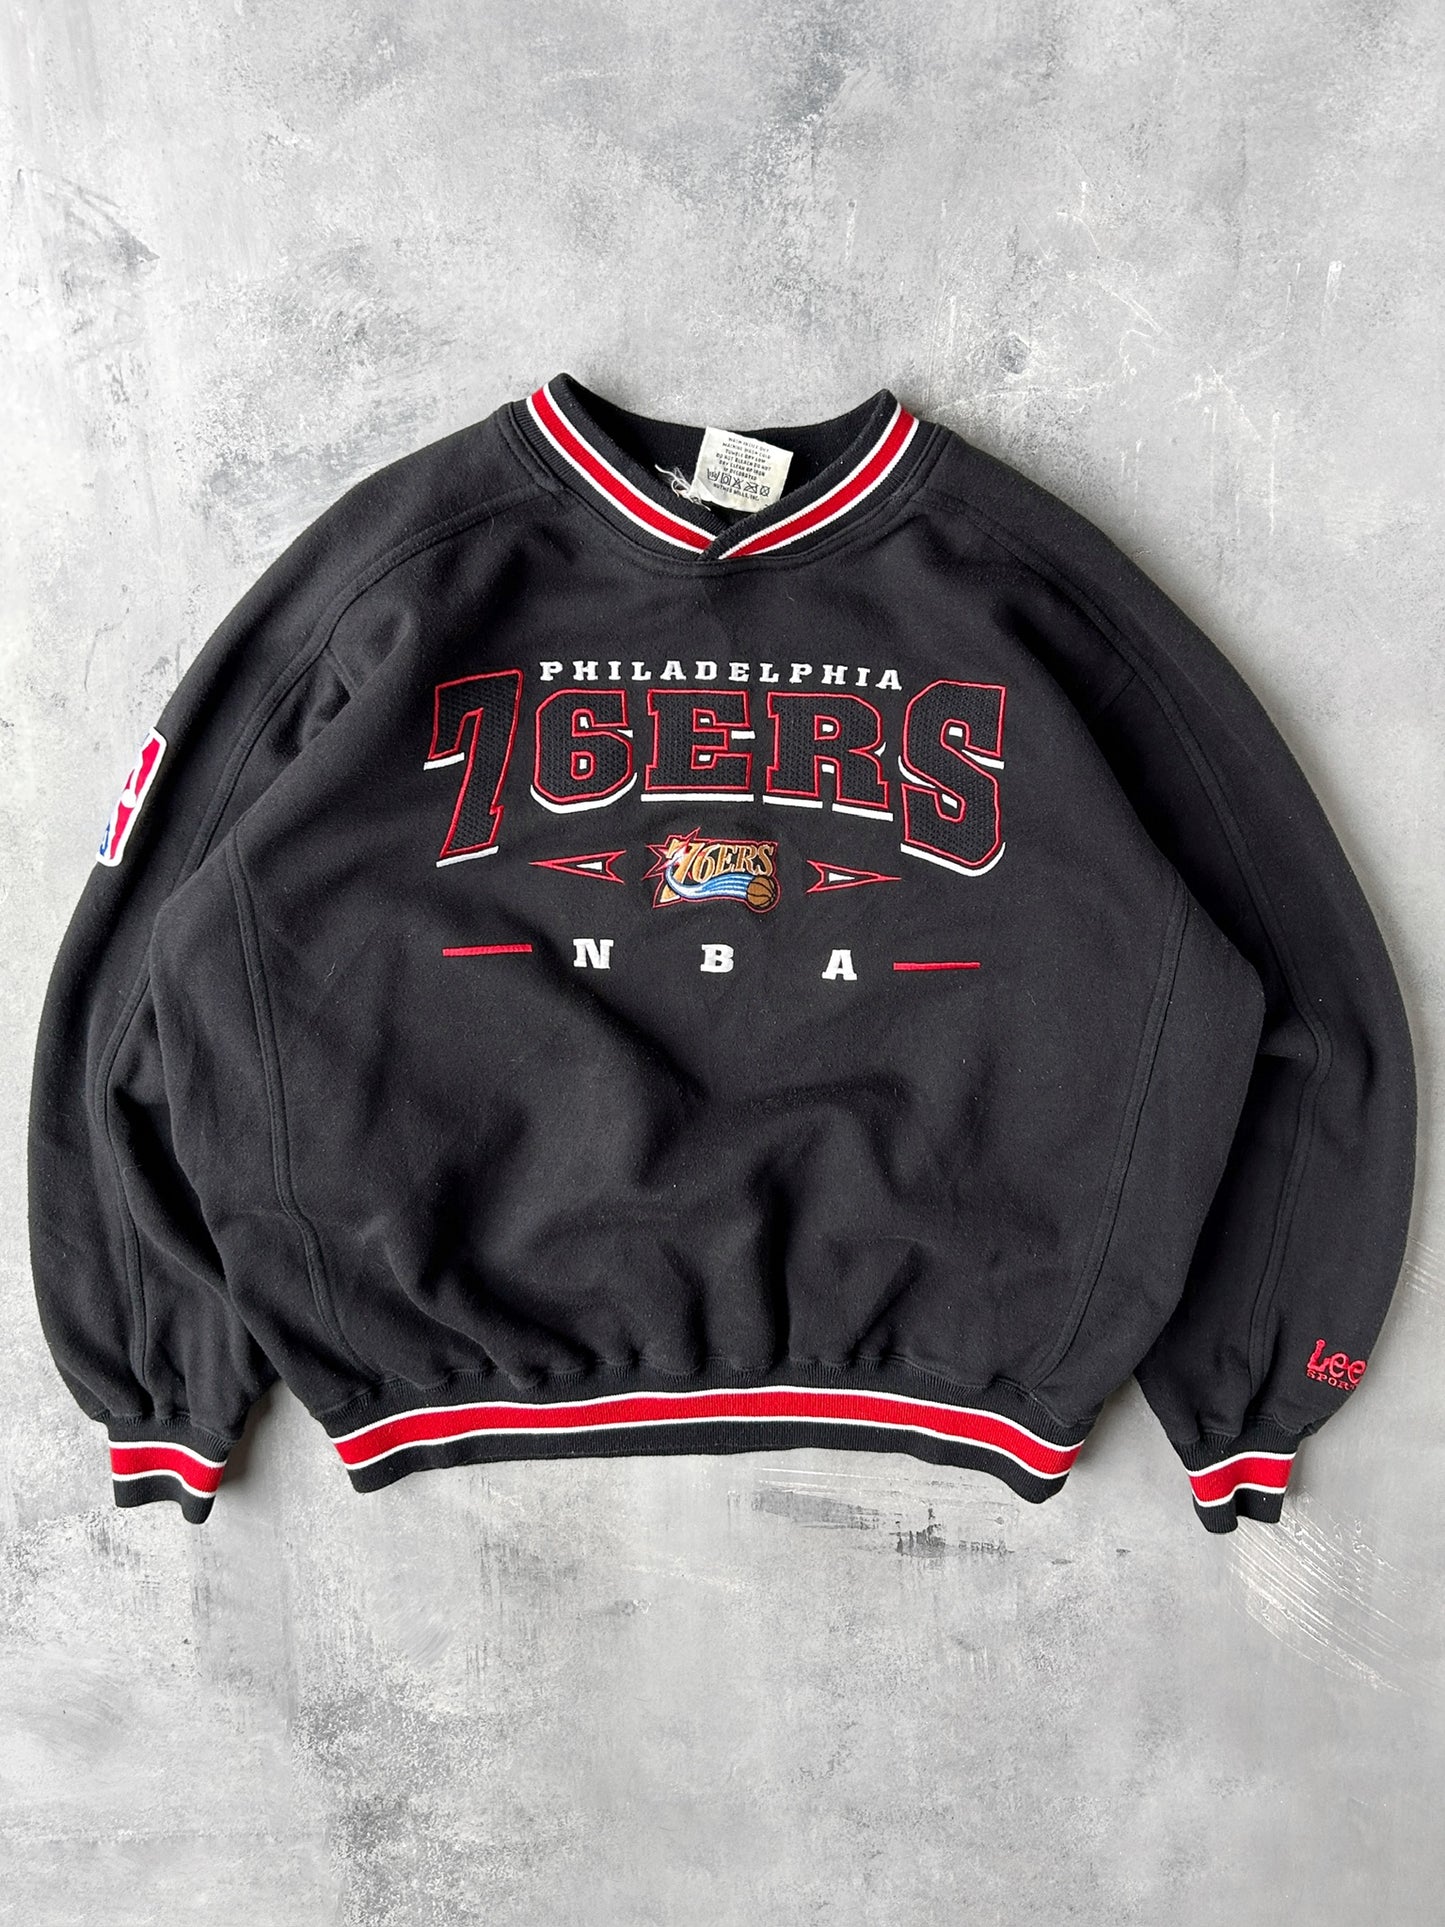 Philadelphia 76ers Sweatshirt 90's - XL